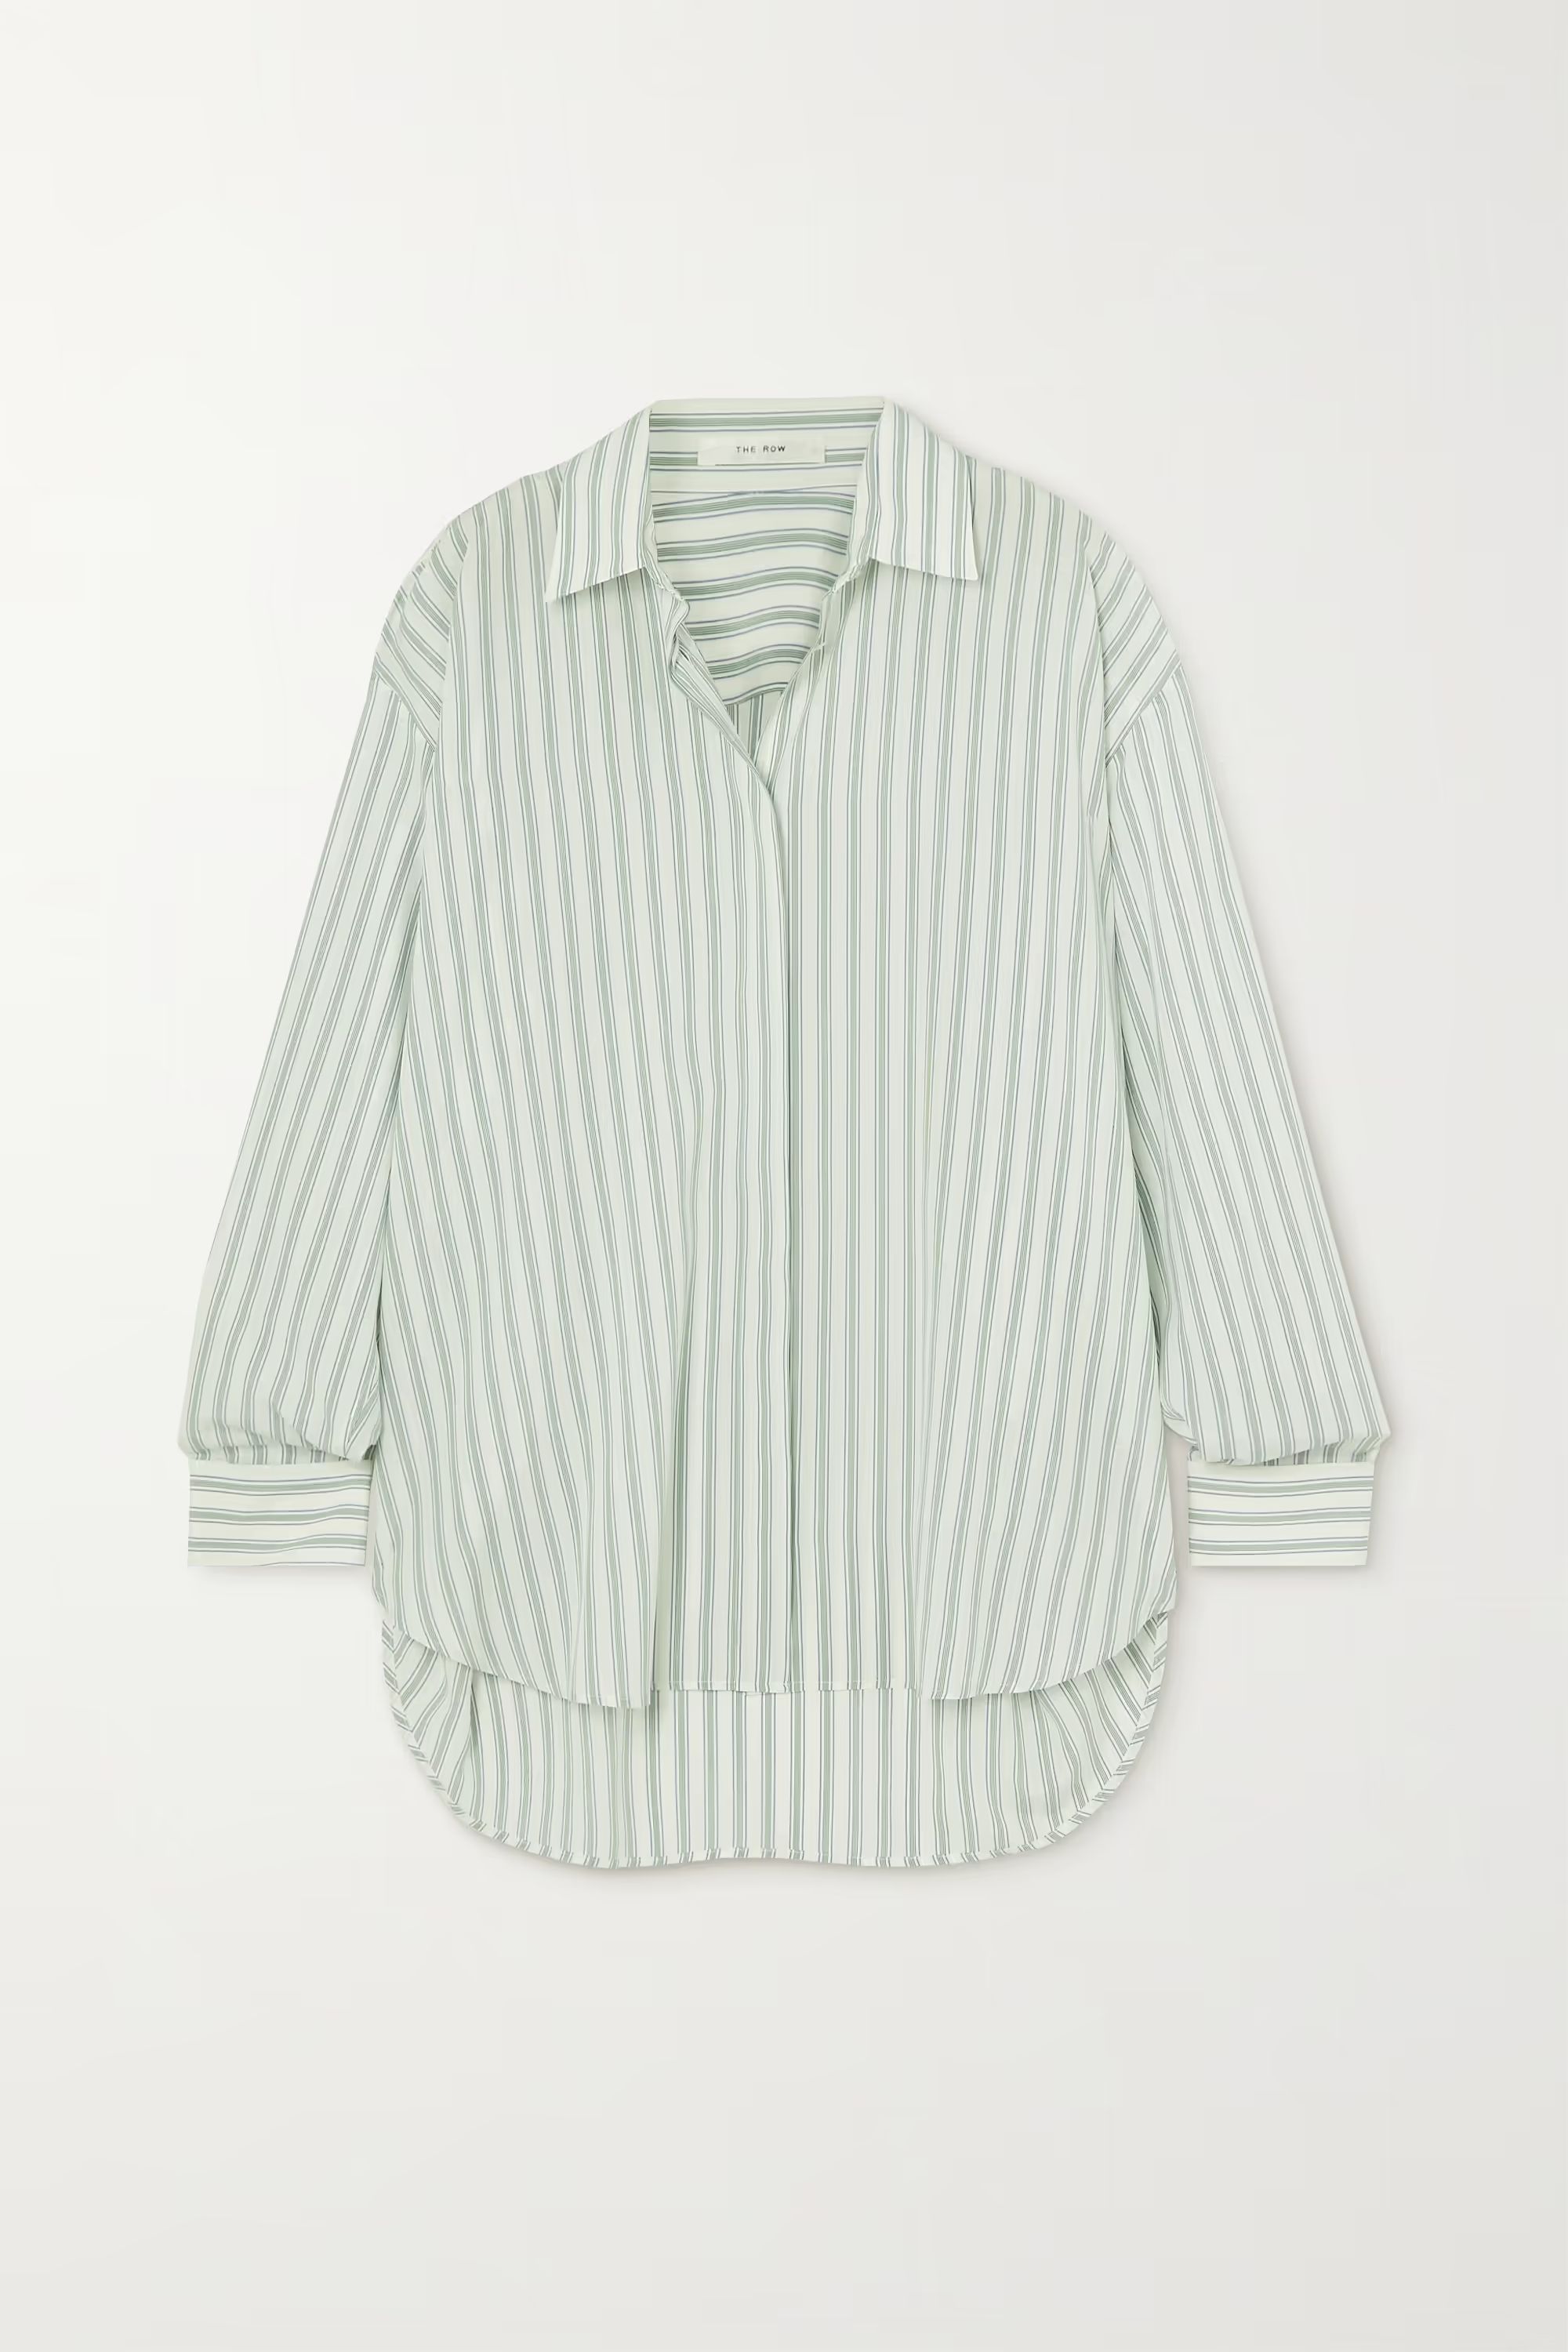 Sisca striped silk shirt | NET-A-PORTER (UK & EU)